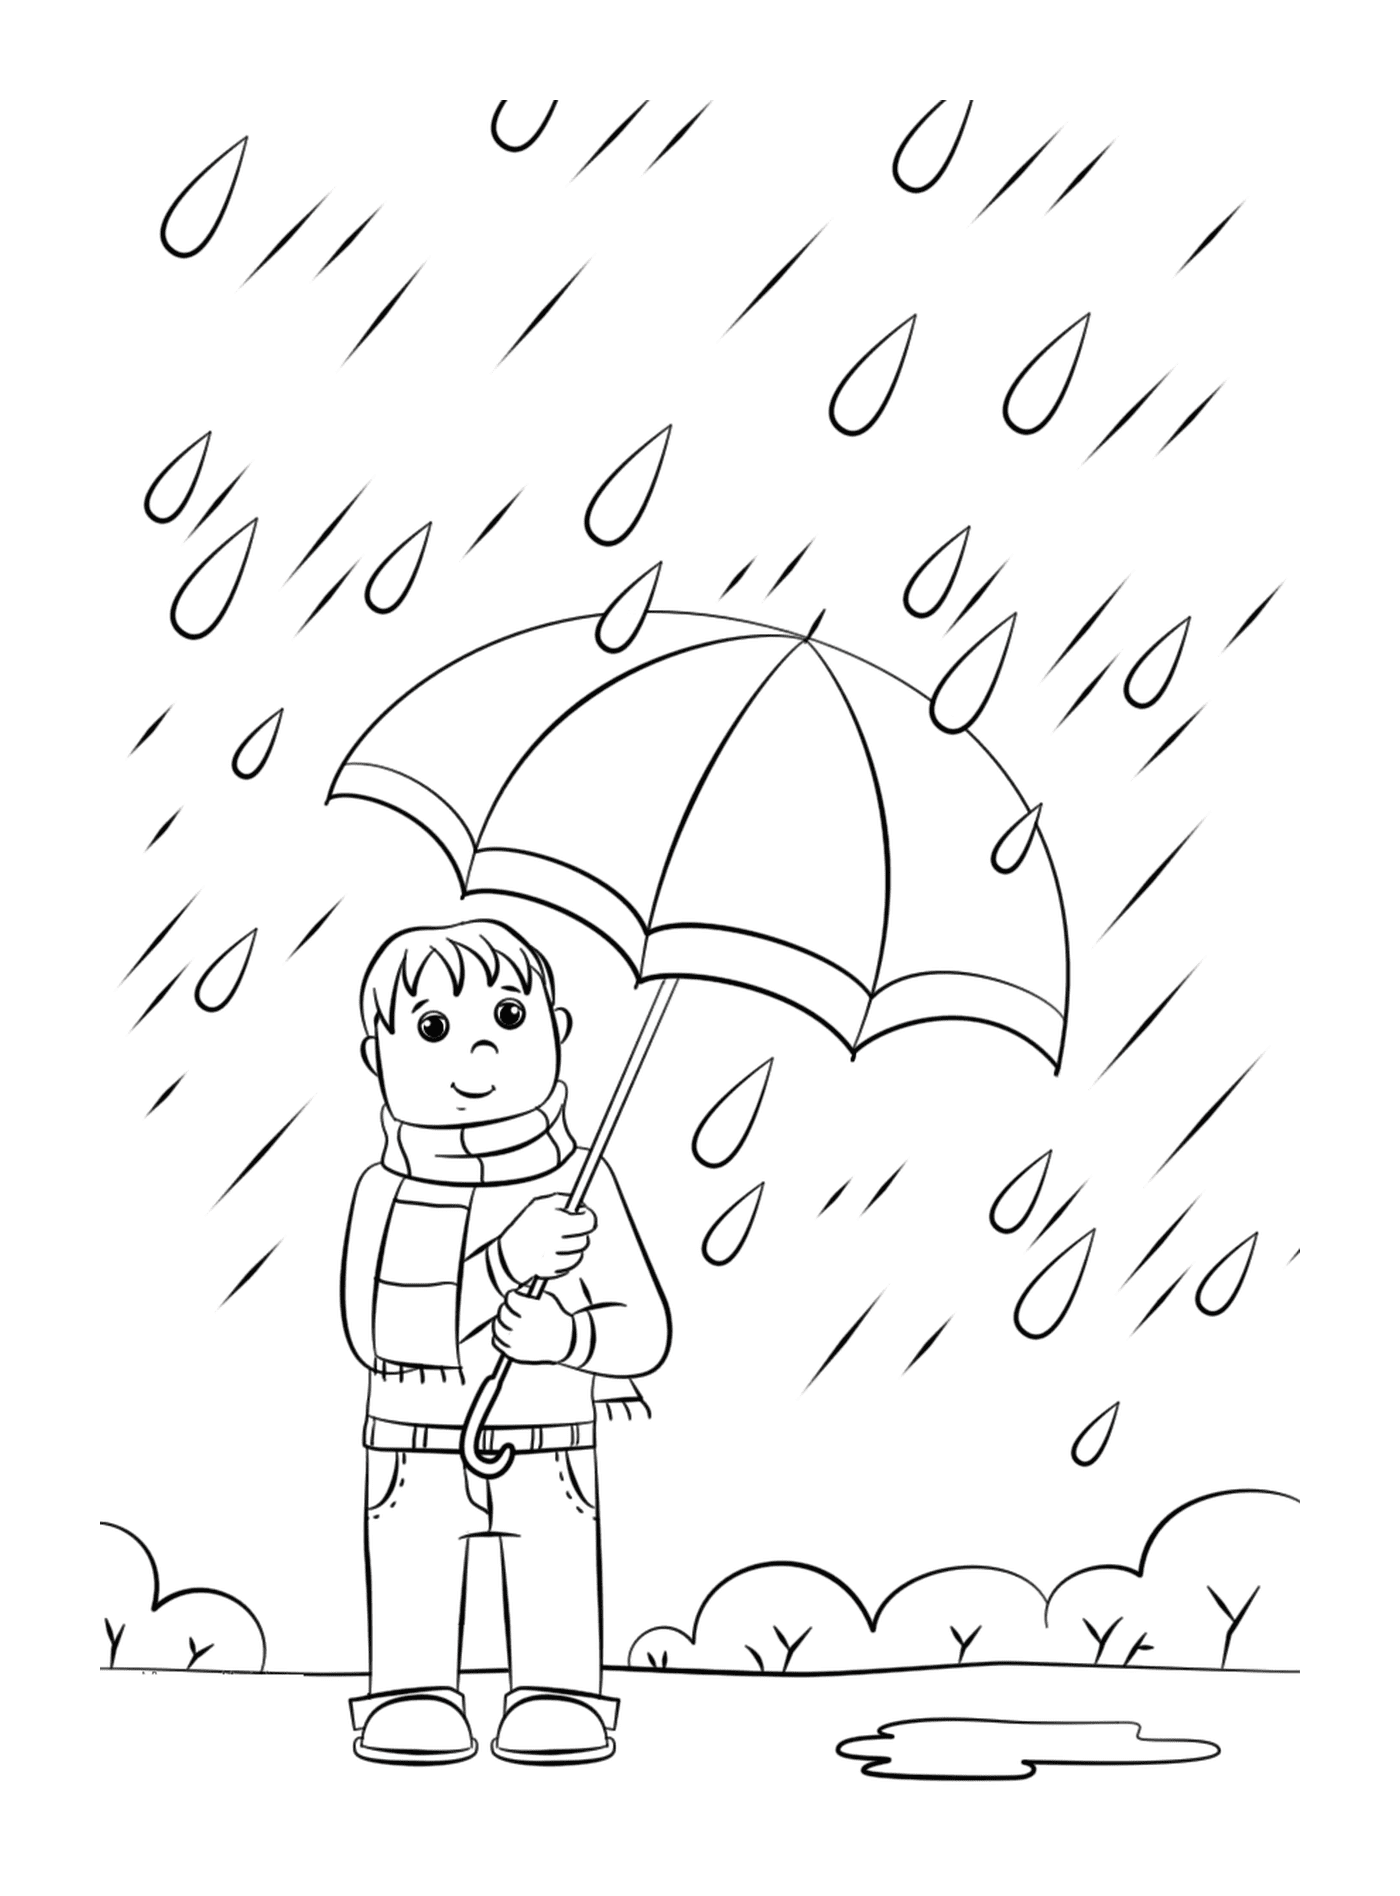   Un homme tenant un parapluie sous la pluie 